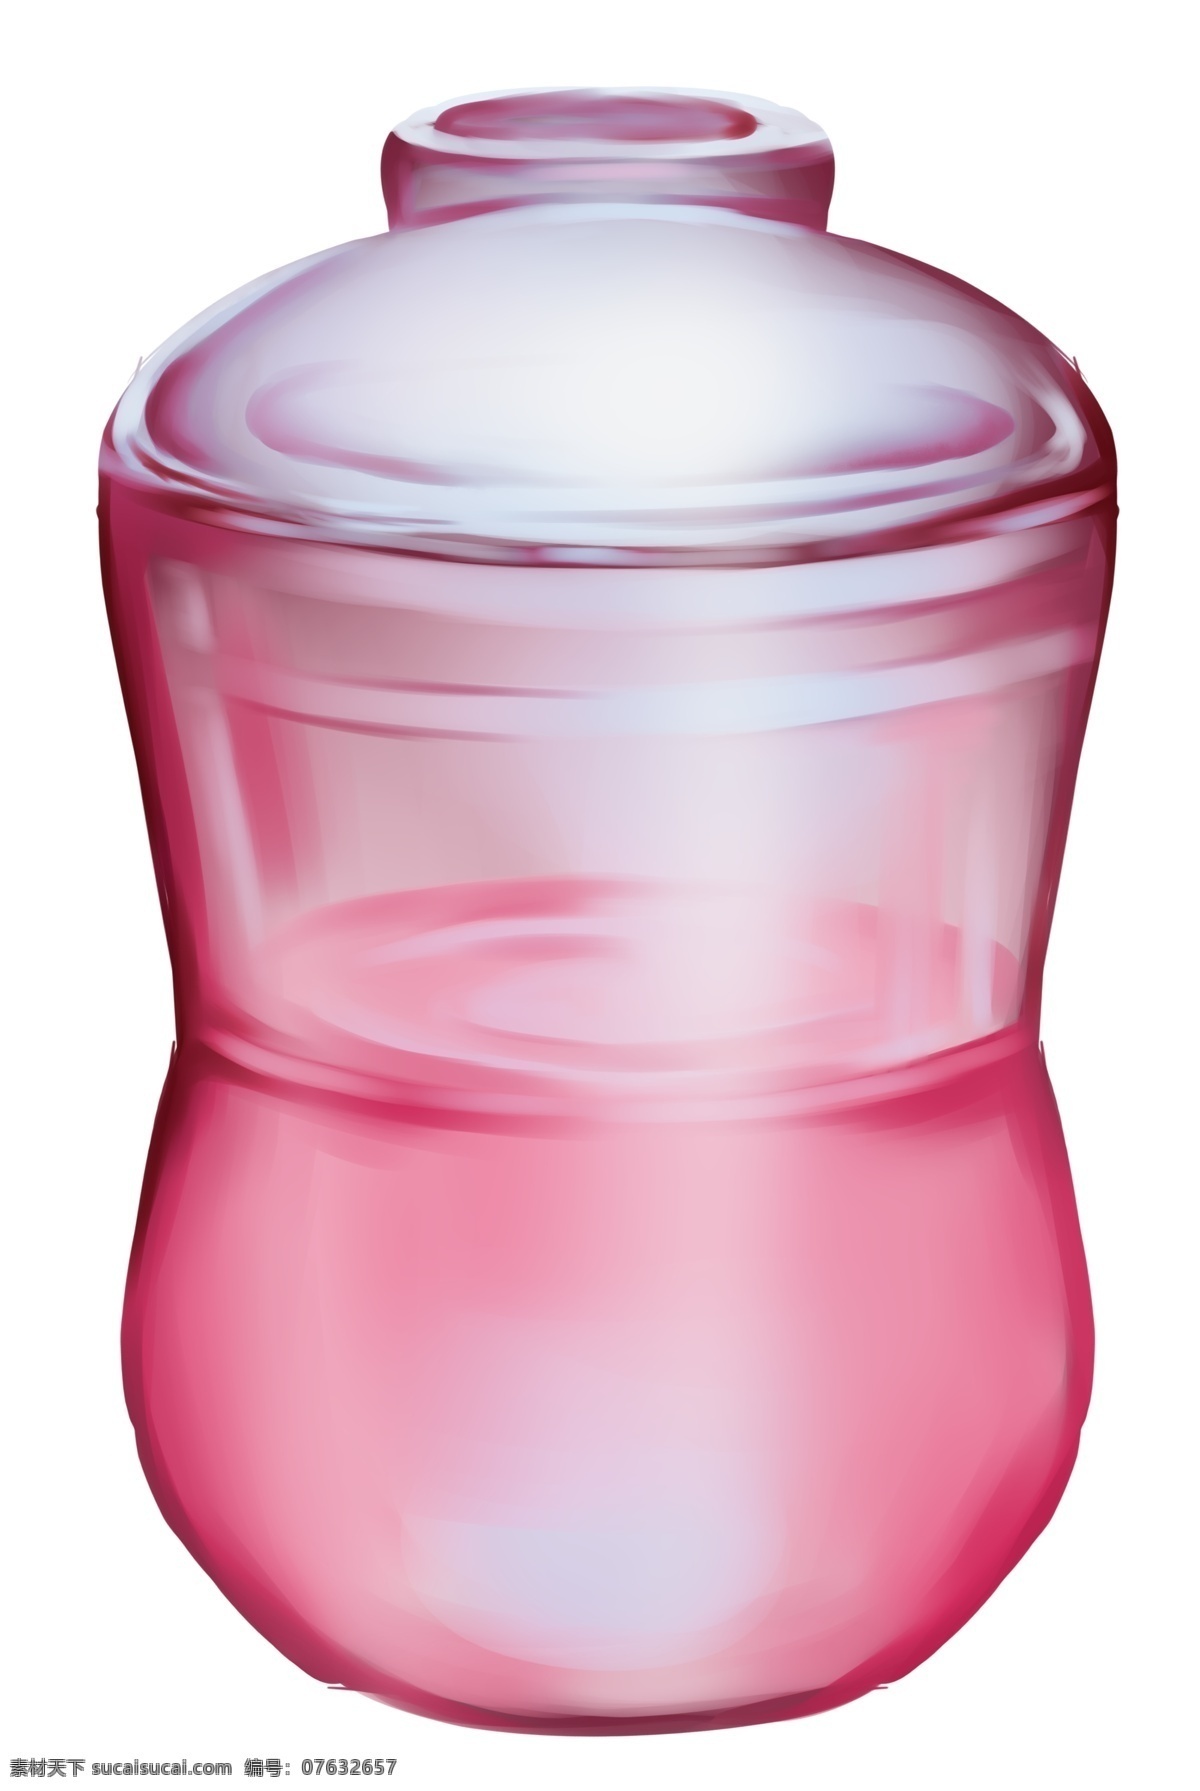 红色 玻璃 瓶子 插画 玻璃瓶子 玻璃容器 红色玻璃 红色玻璃容器 红色玻璃瓶子